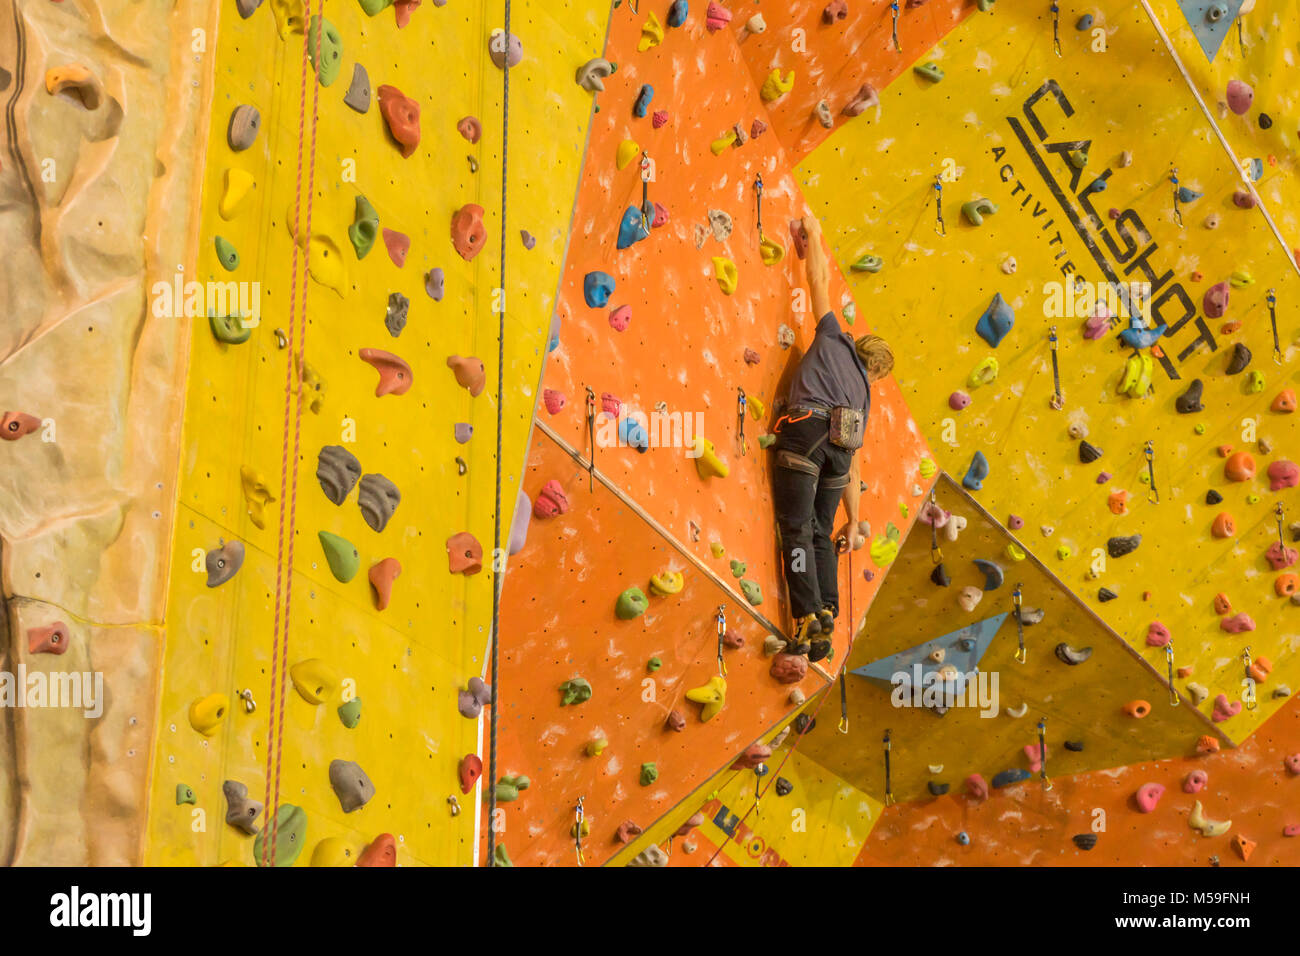 L'homme sur un mur d'escalade intérieur Activités Calshot Calshot, UK, centre Banque D'Images